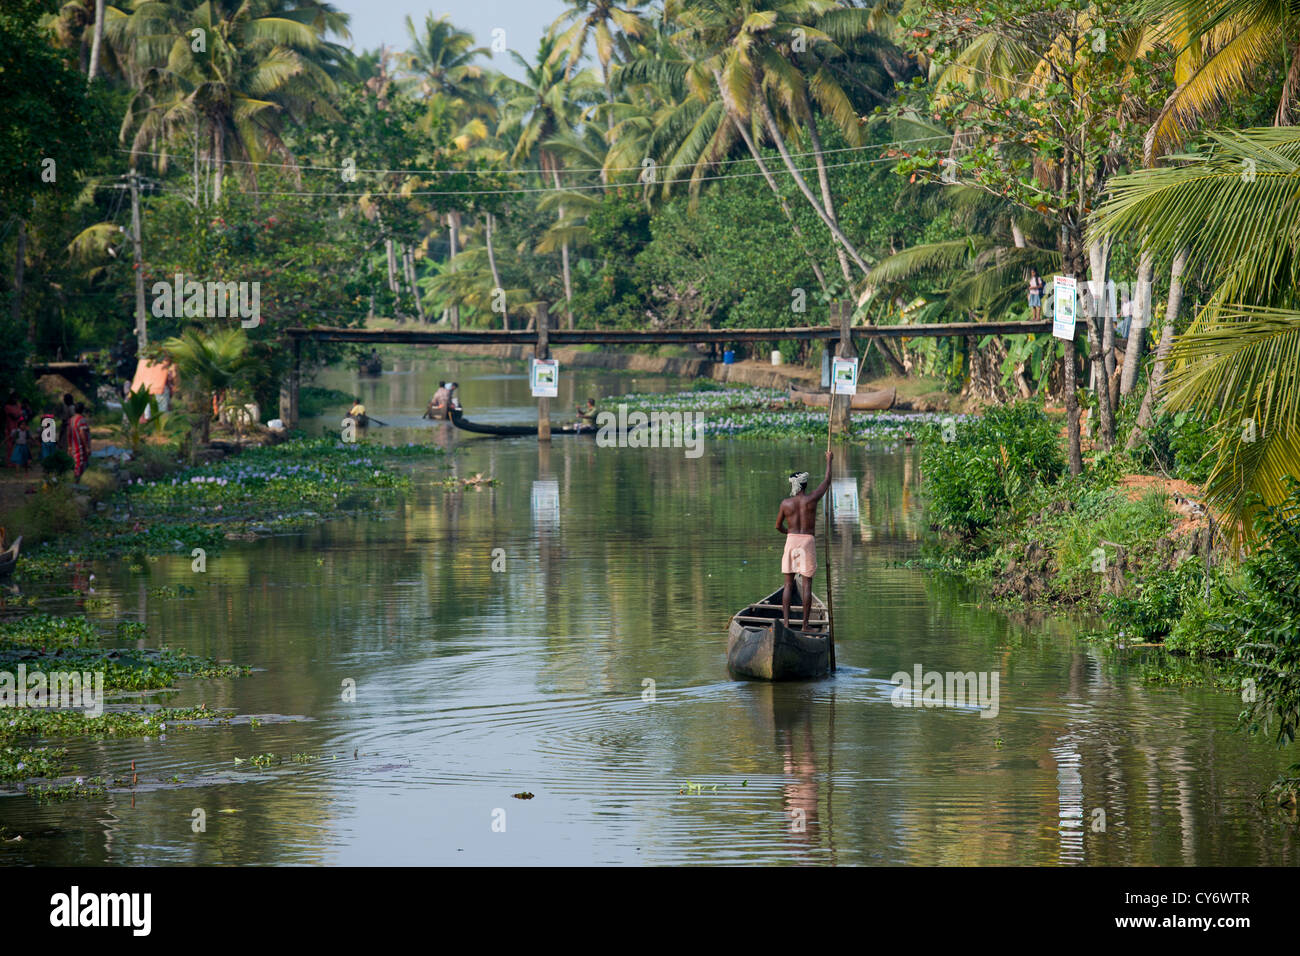 Un homme Jiménez-montealegre voie navigable à un petit village, près de Kumarakom, Kottayam, Kerala, Inde Banque D'Images